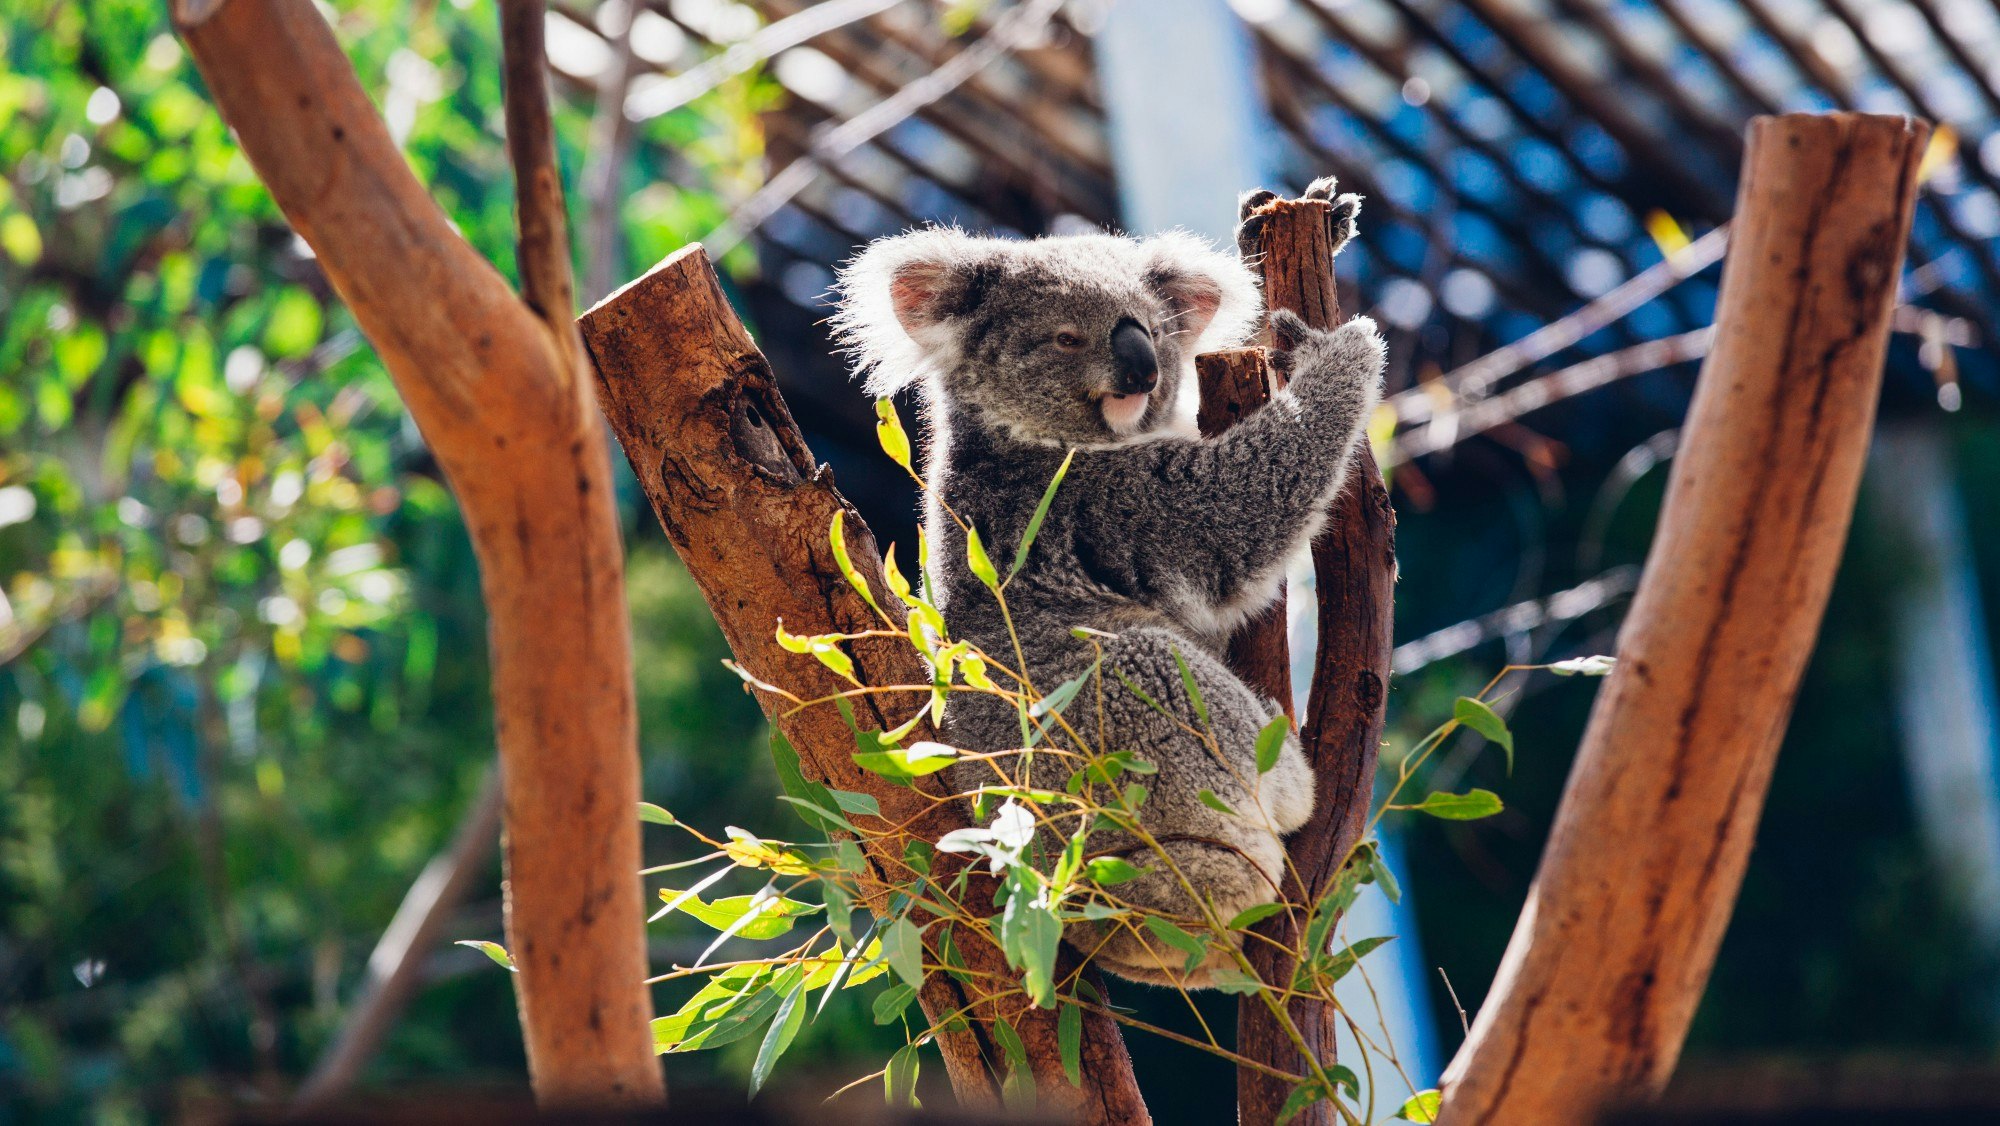 A koala on a tree.